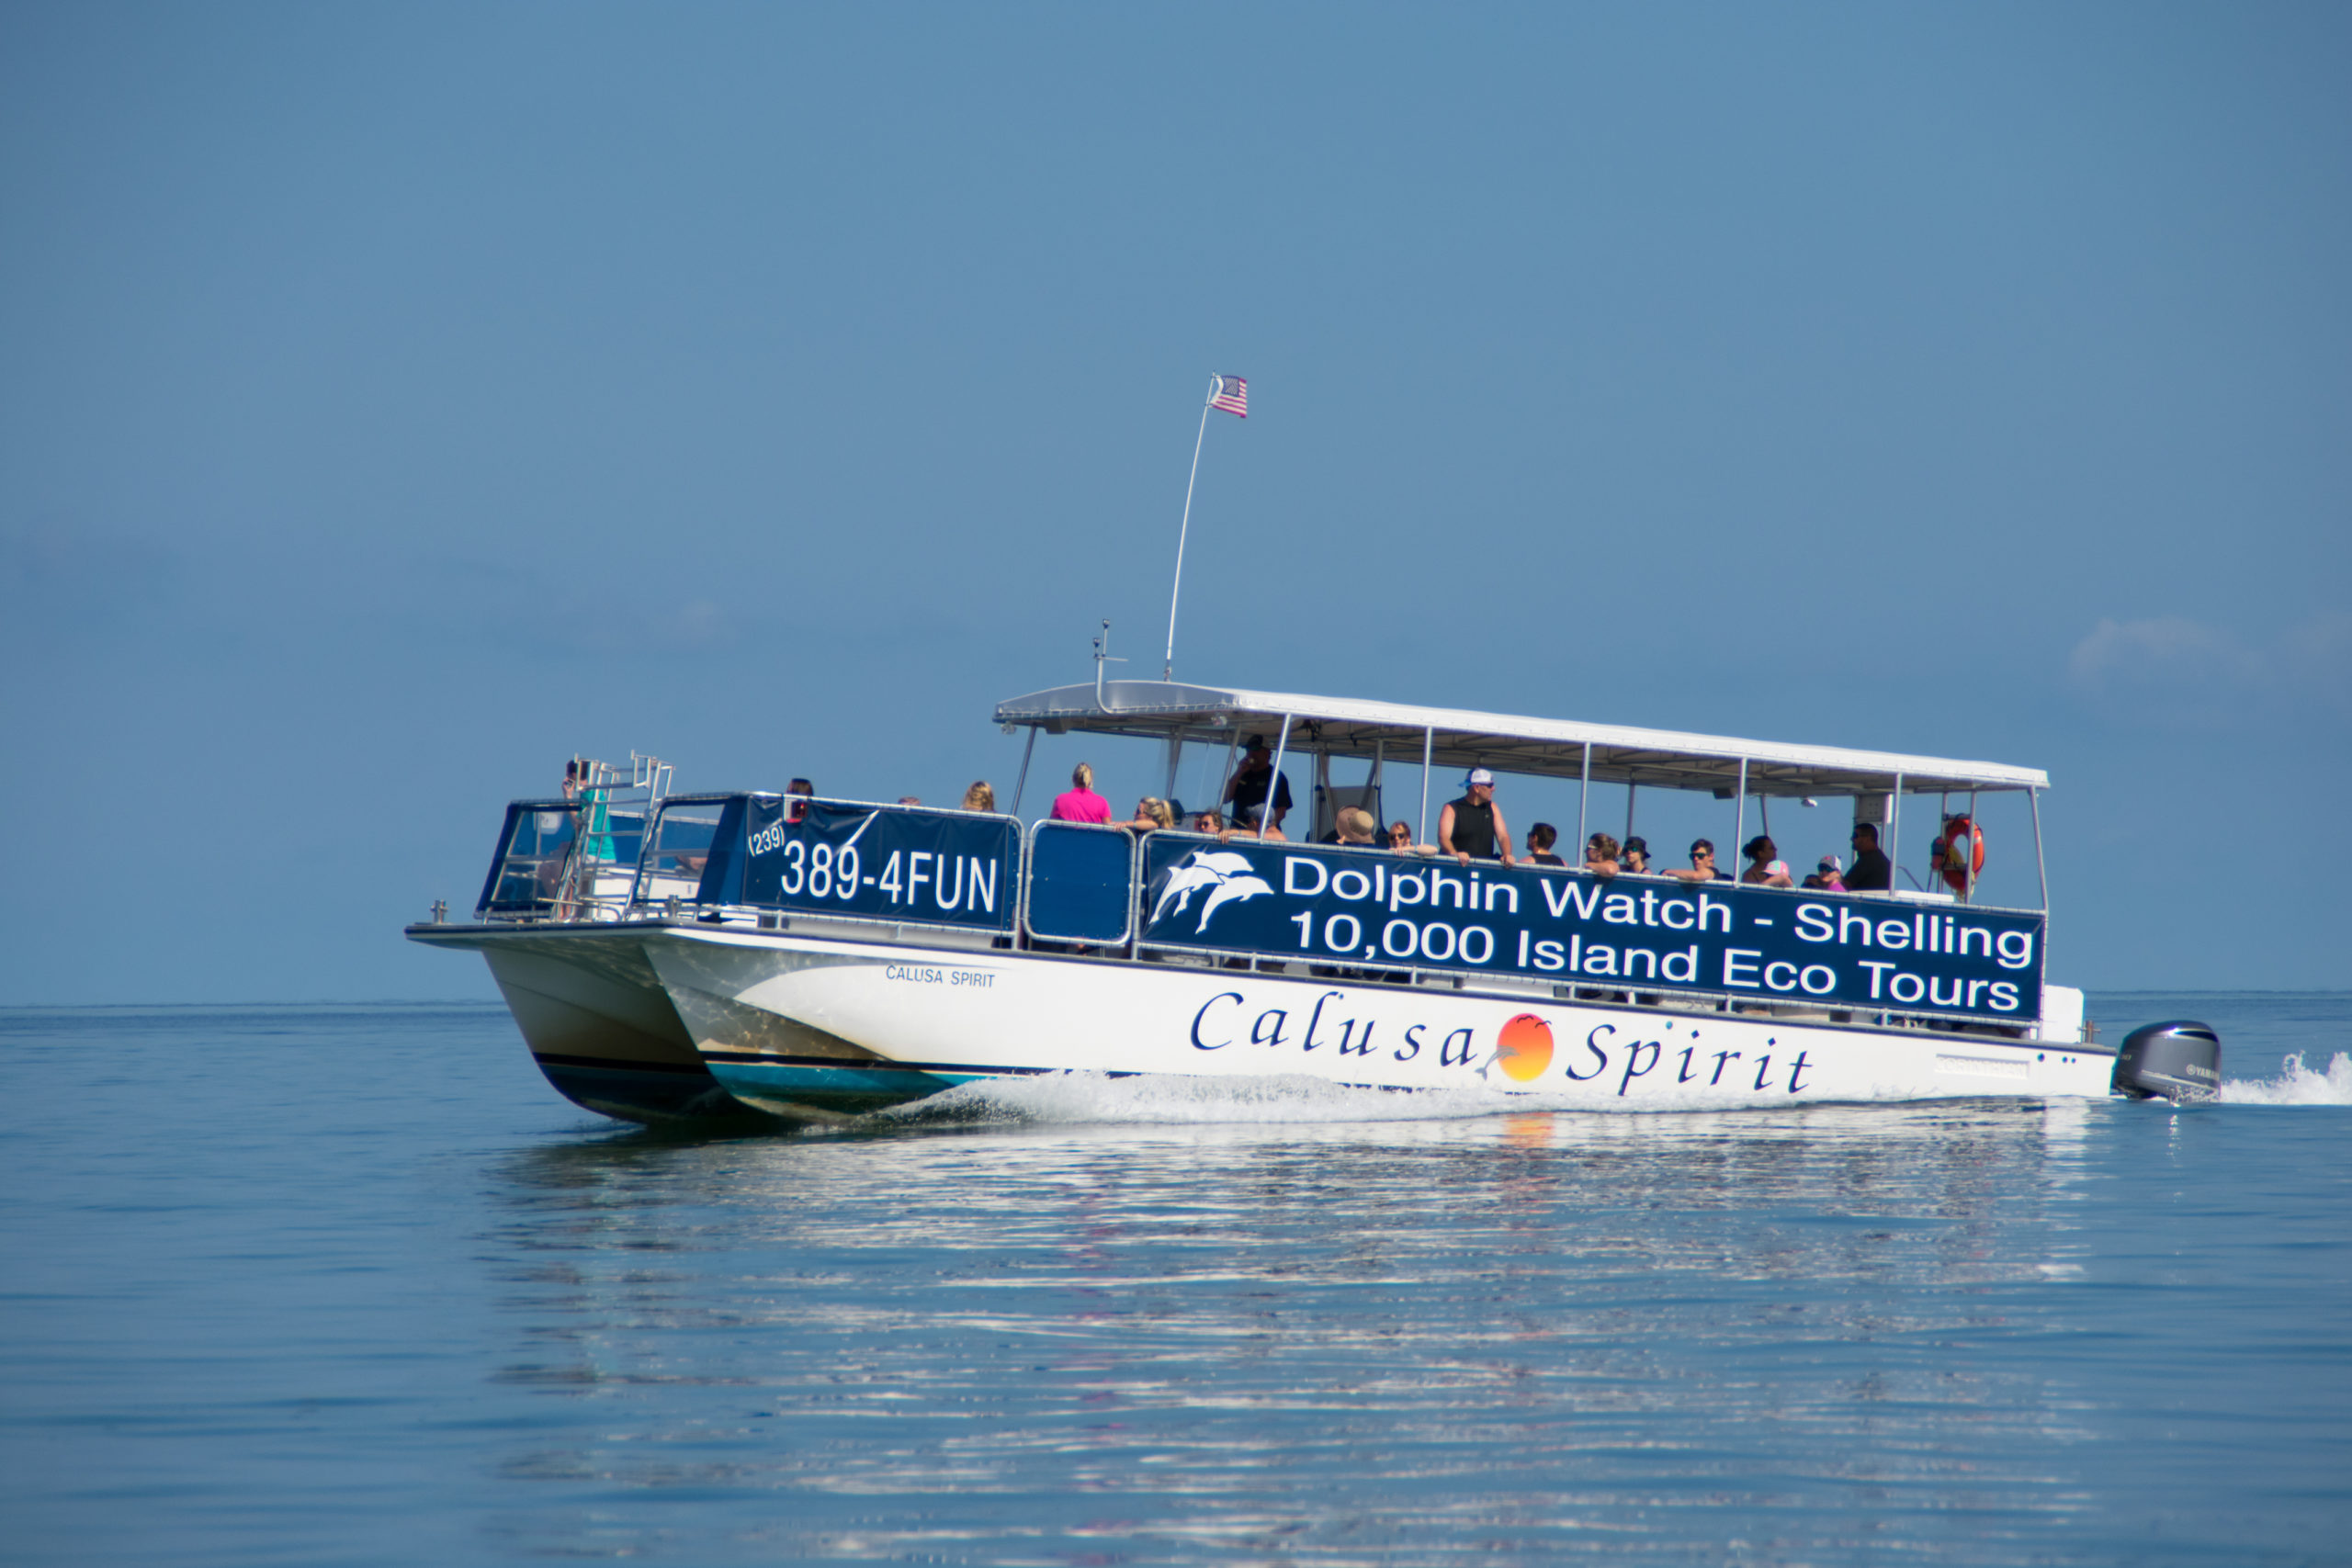 calusa spirit catamaran tour